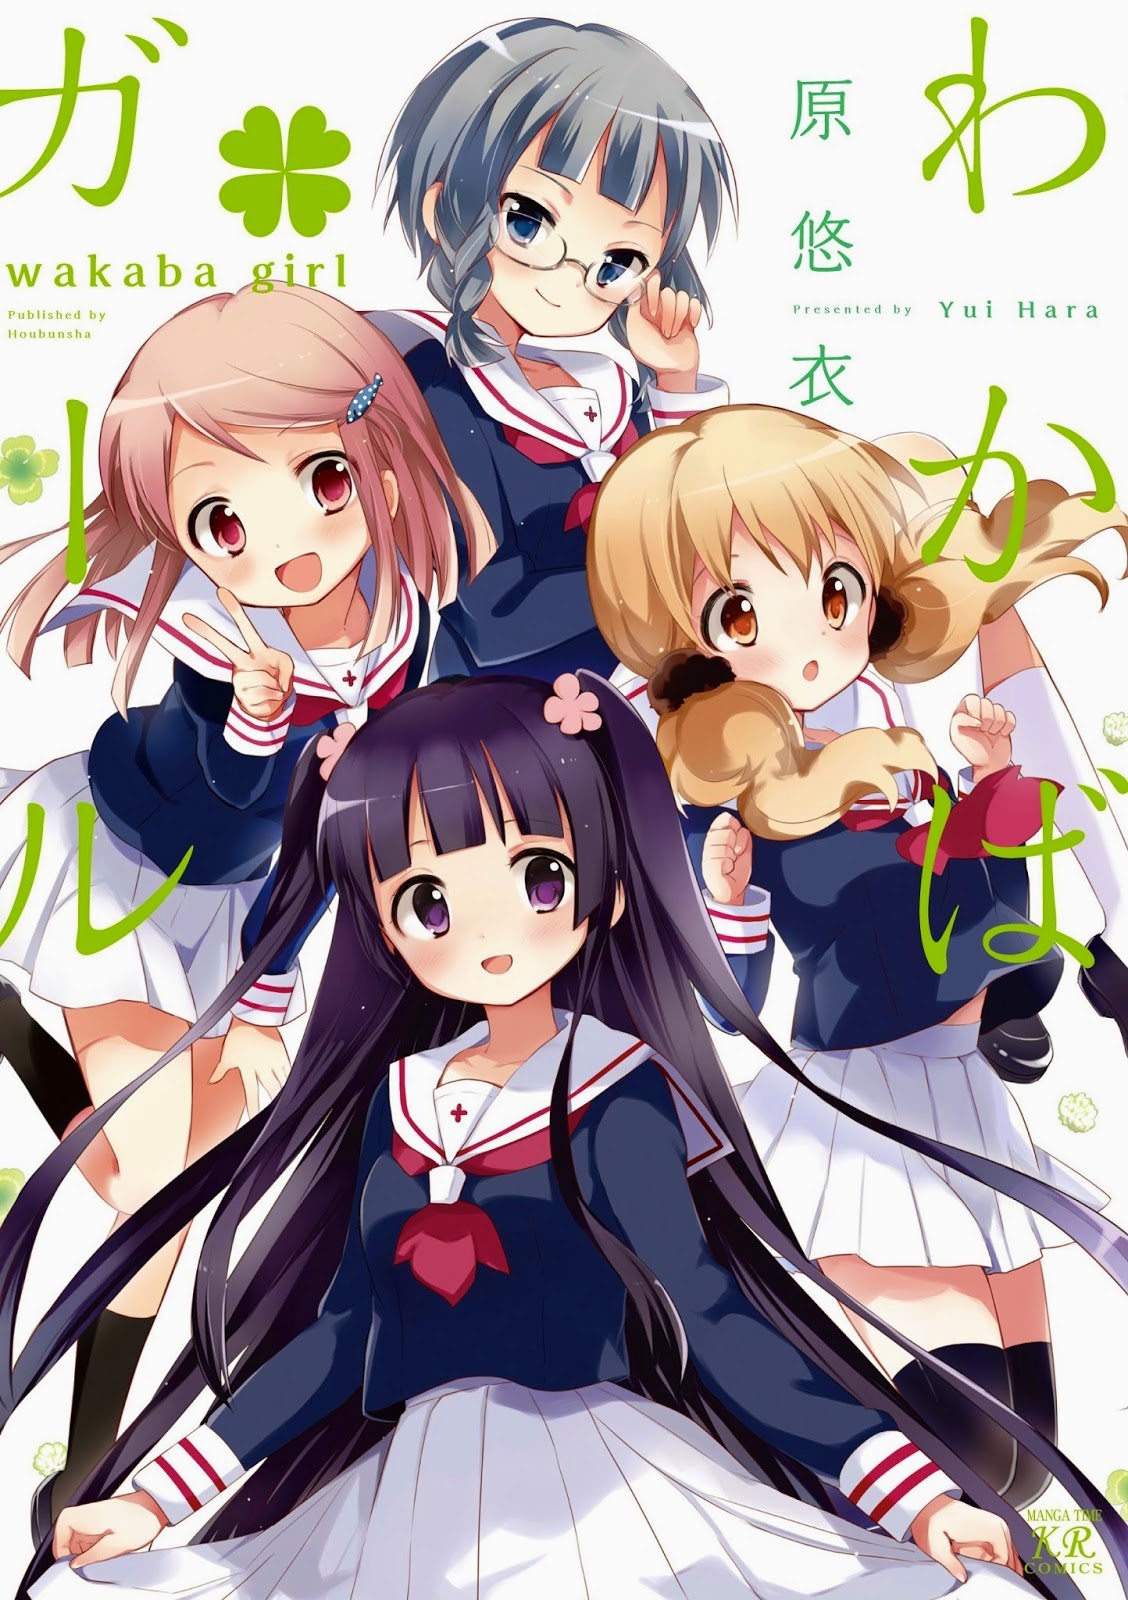 Wakaba Girl Anime personal de producción